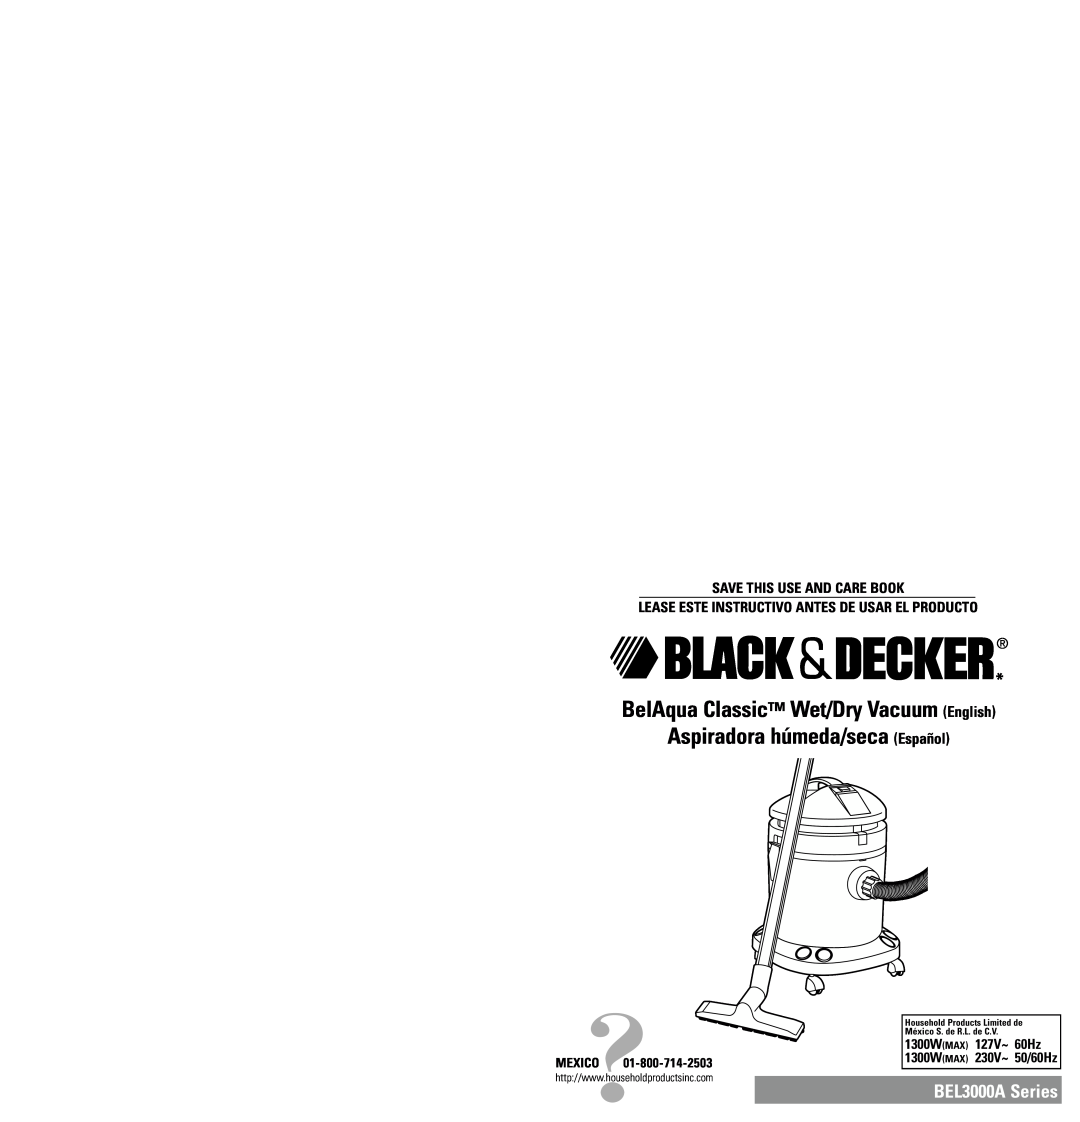 Black & Decker BEL3000A Series, BEL3000A135 manual BelAqua Classic Wet/Dry Vacuum English Aspiradora húmeda/seca Español 